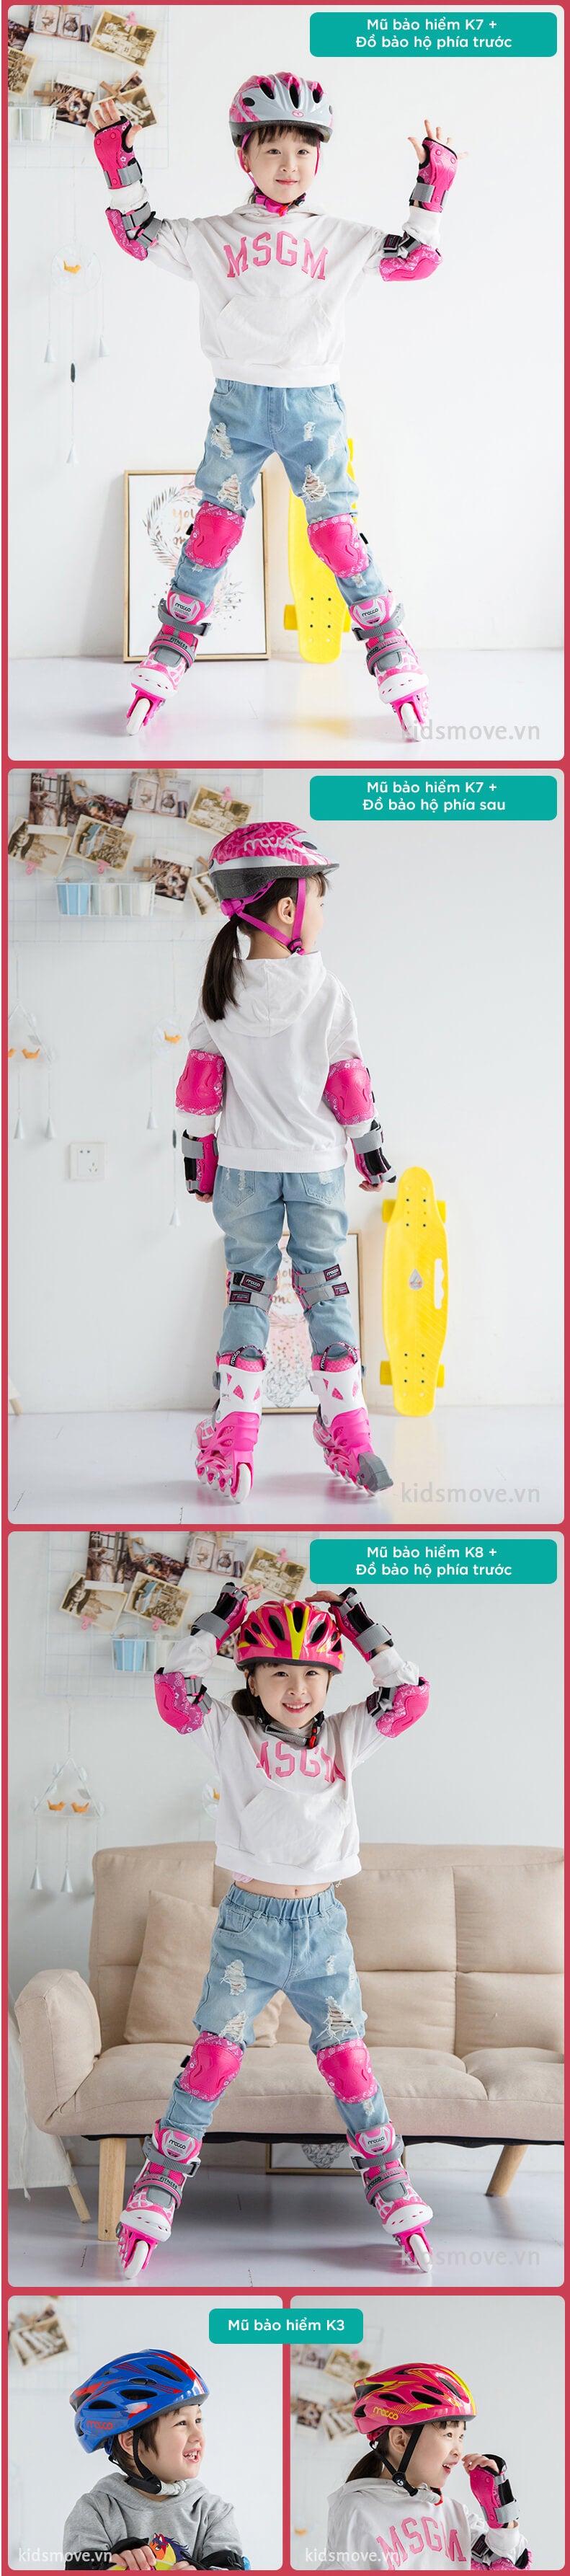 Giày trượt patin cho bé 3-4-5-6-7-8 tuổi Migao M1